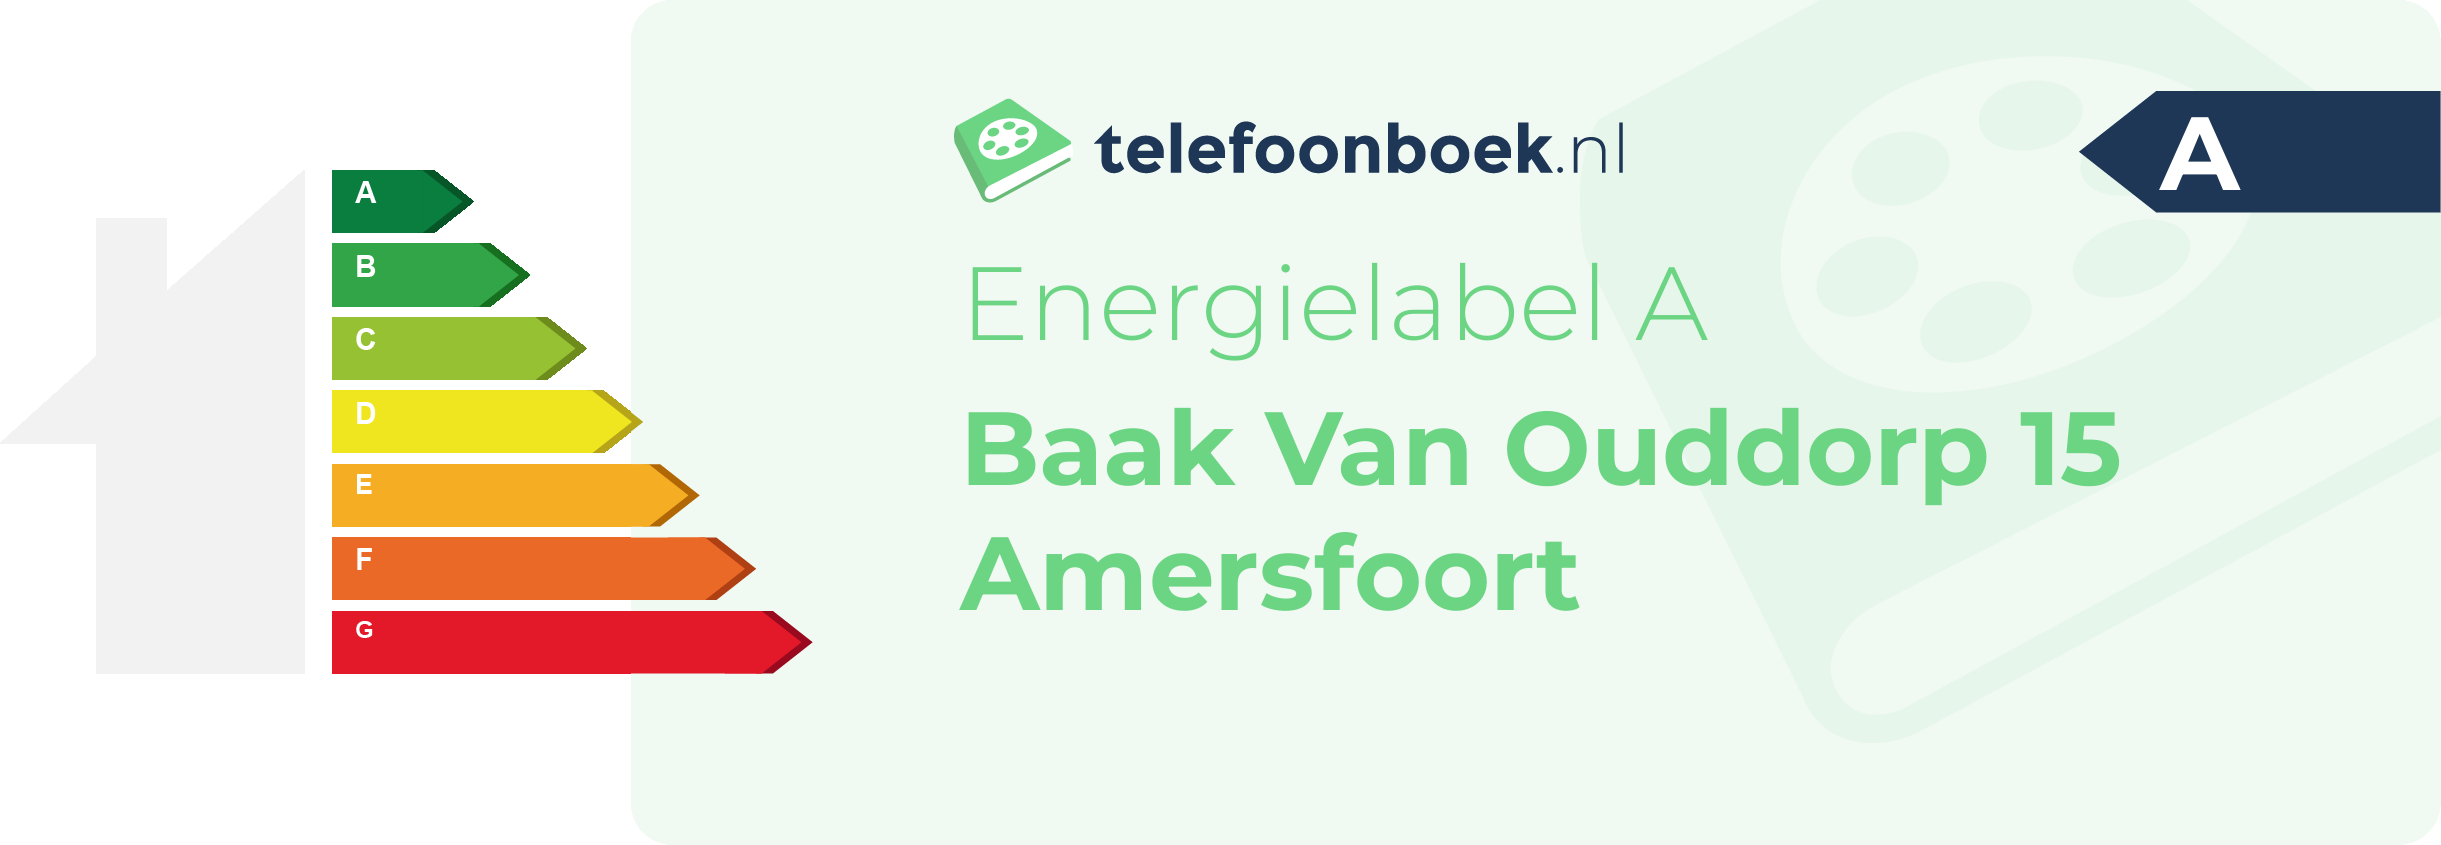 Energielabel Baak Van Ouddorp 15 Amersfoort